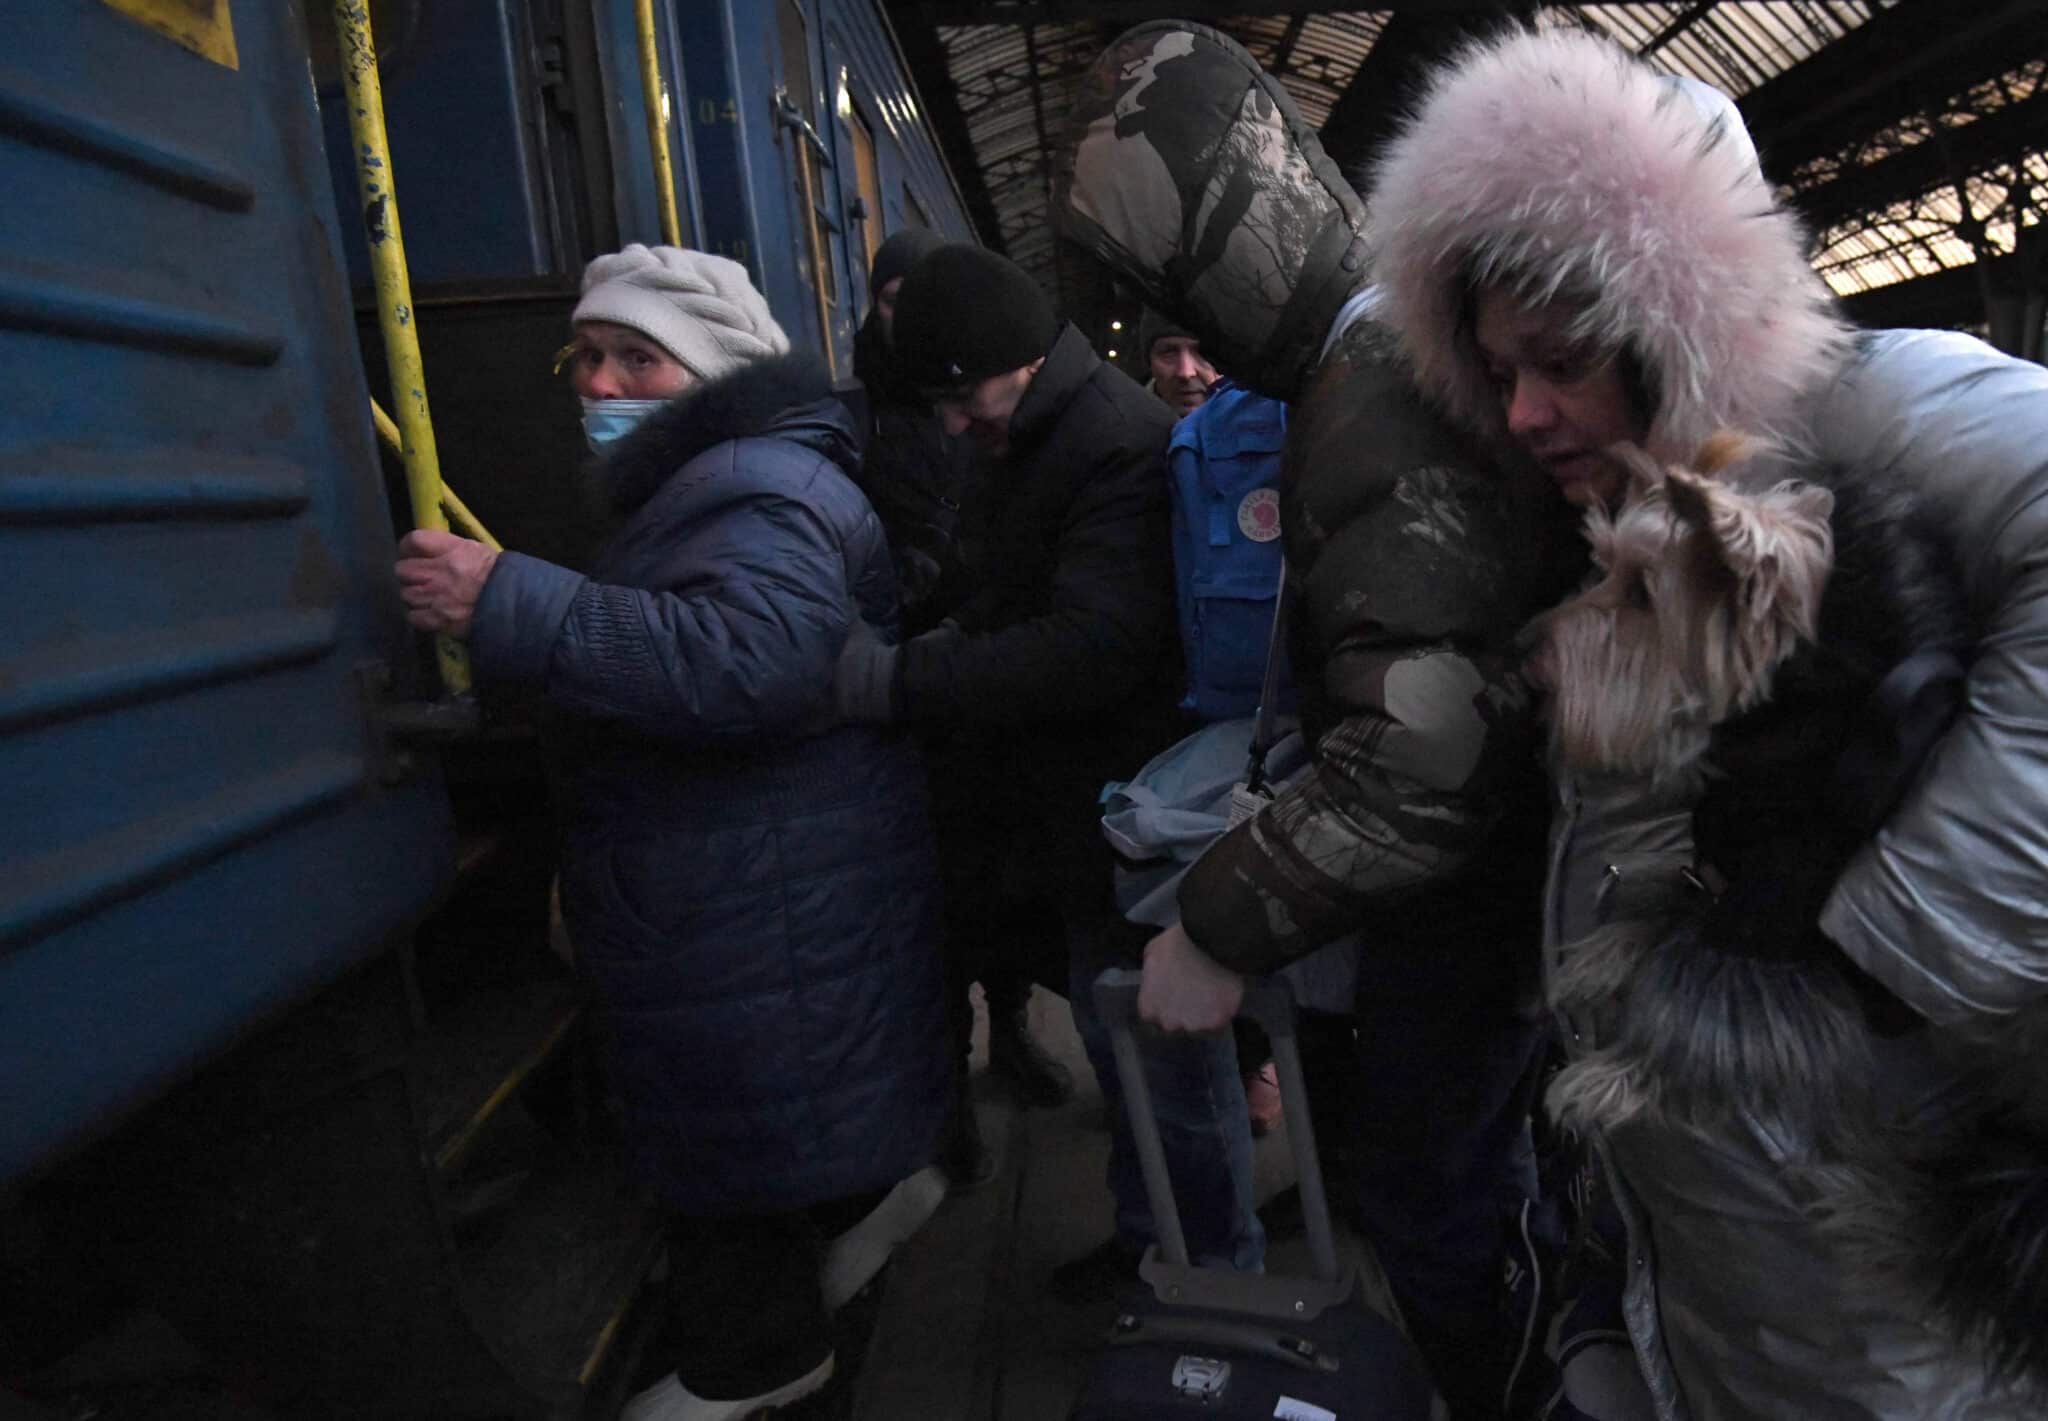 Rusia y Ucrania acuerdan un alto al fuego de 12 horas para abrir corredores humanitarios